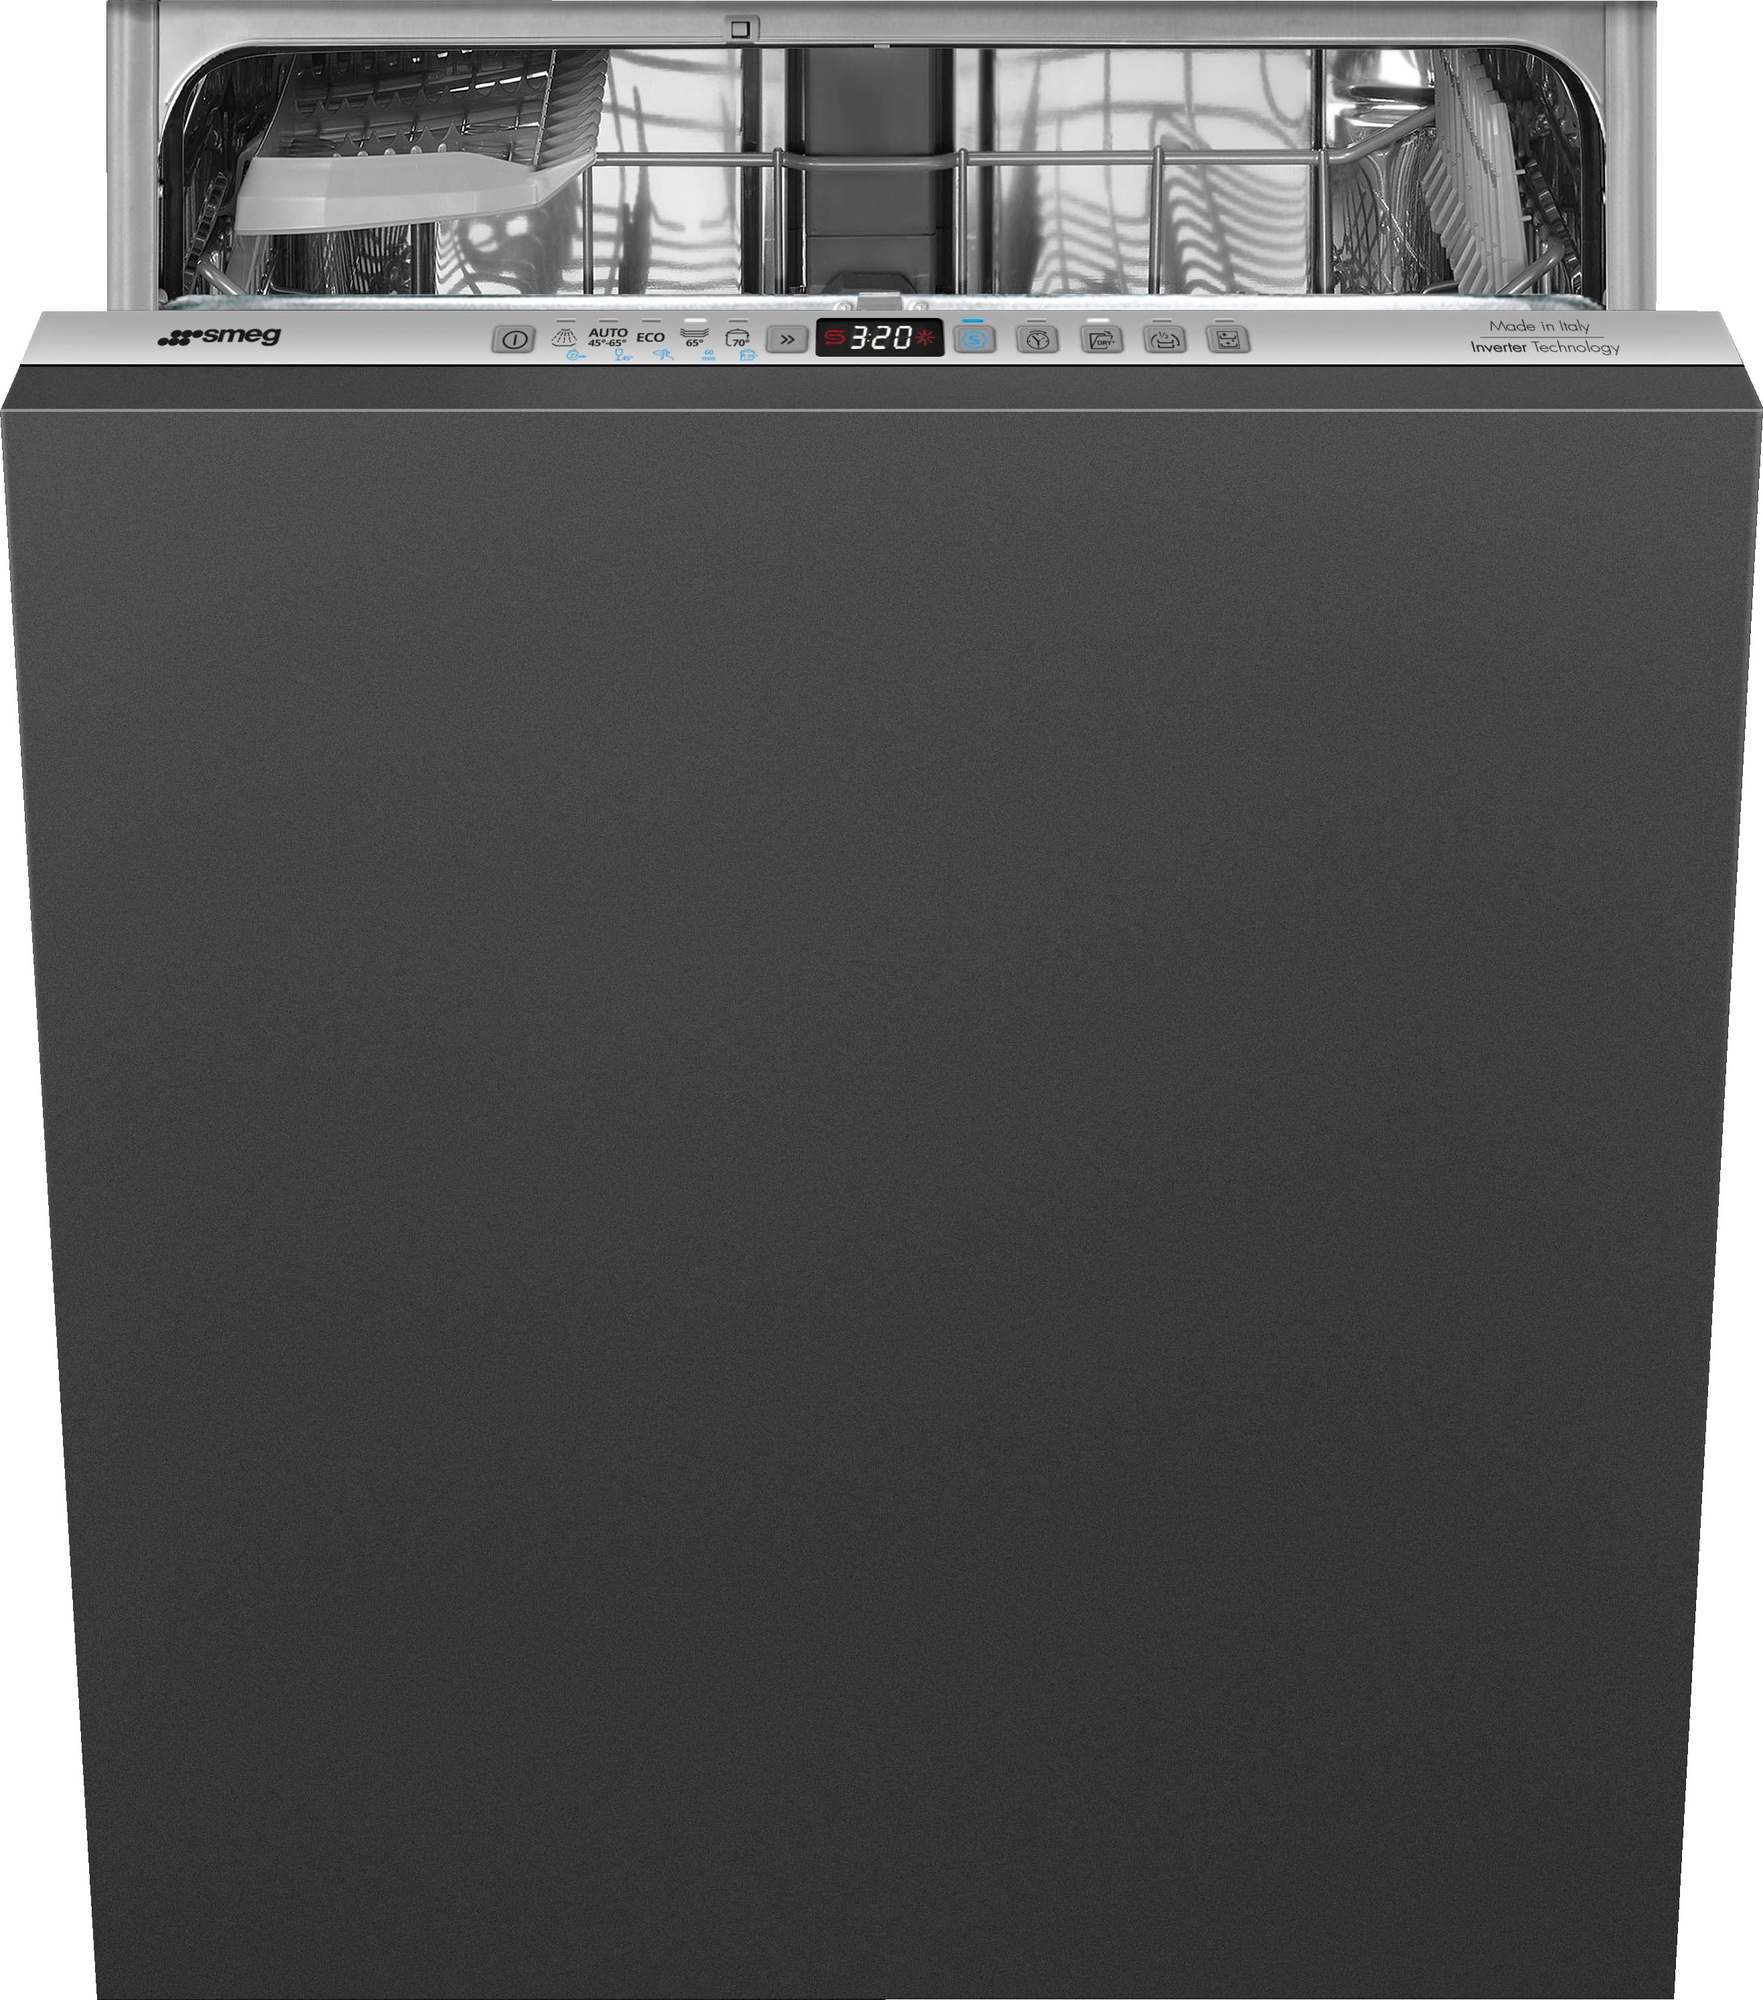 Smeg opvaskemaskine STL233CLH (sølv)